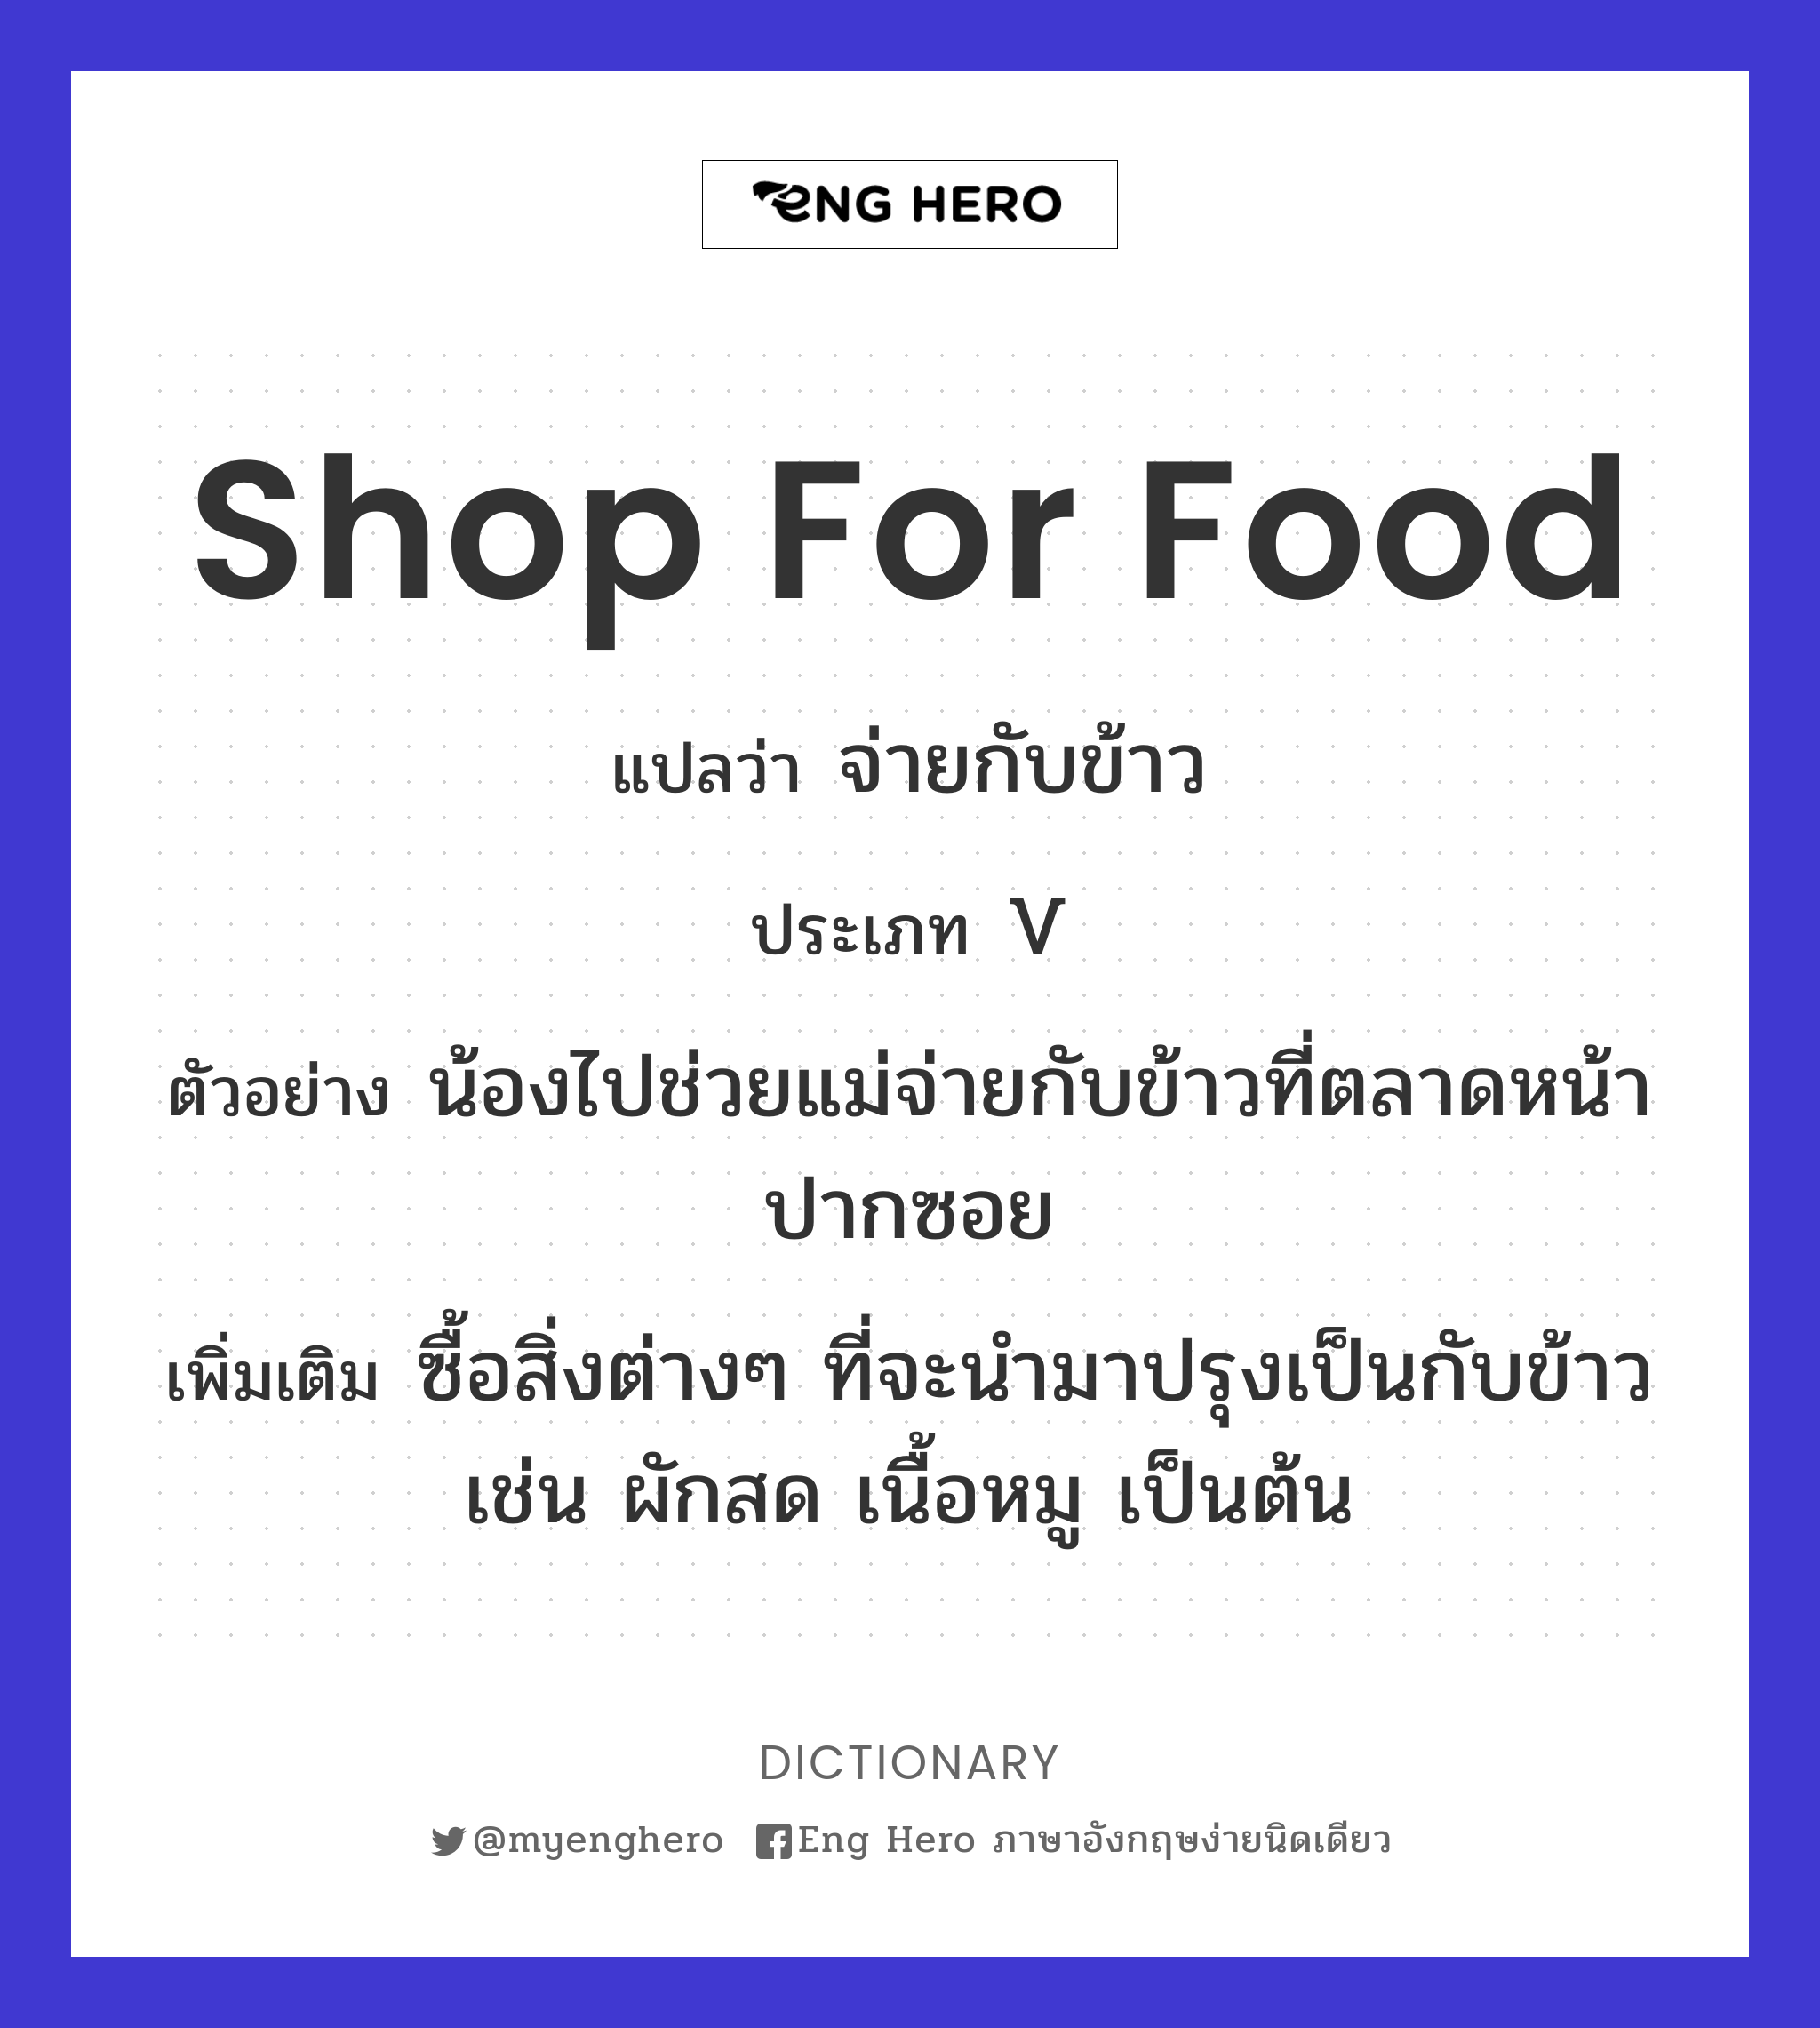 Shop For Food แปลว่า จ่ายกับข้าว | Eng Hero เรียนภาษาอังกฤษ ออนไลน์ ฟรี